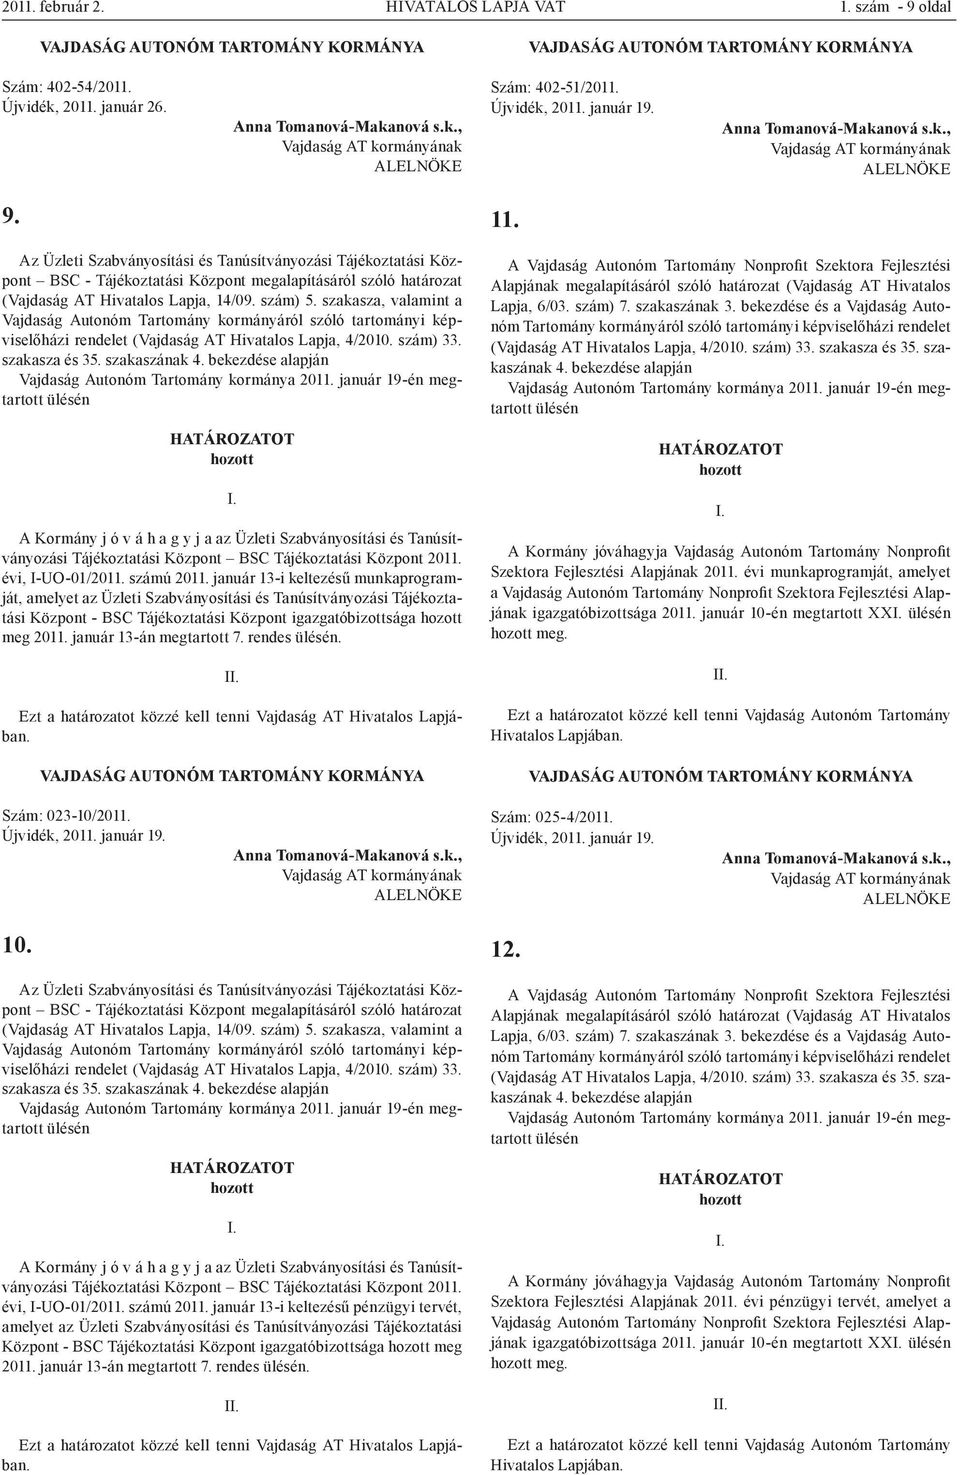 szakasza, valamint a Vajdaság Autonóm Tartomány kormányáról szóló tartományi képviselőházi rendelet (Vajdaság AT Hivatalos Lapja, 4/2010. szám) 33. szakasza és 35. szakaszának 4.